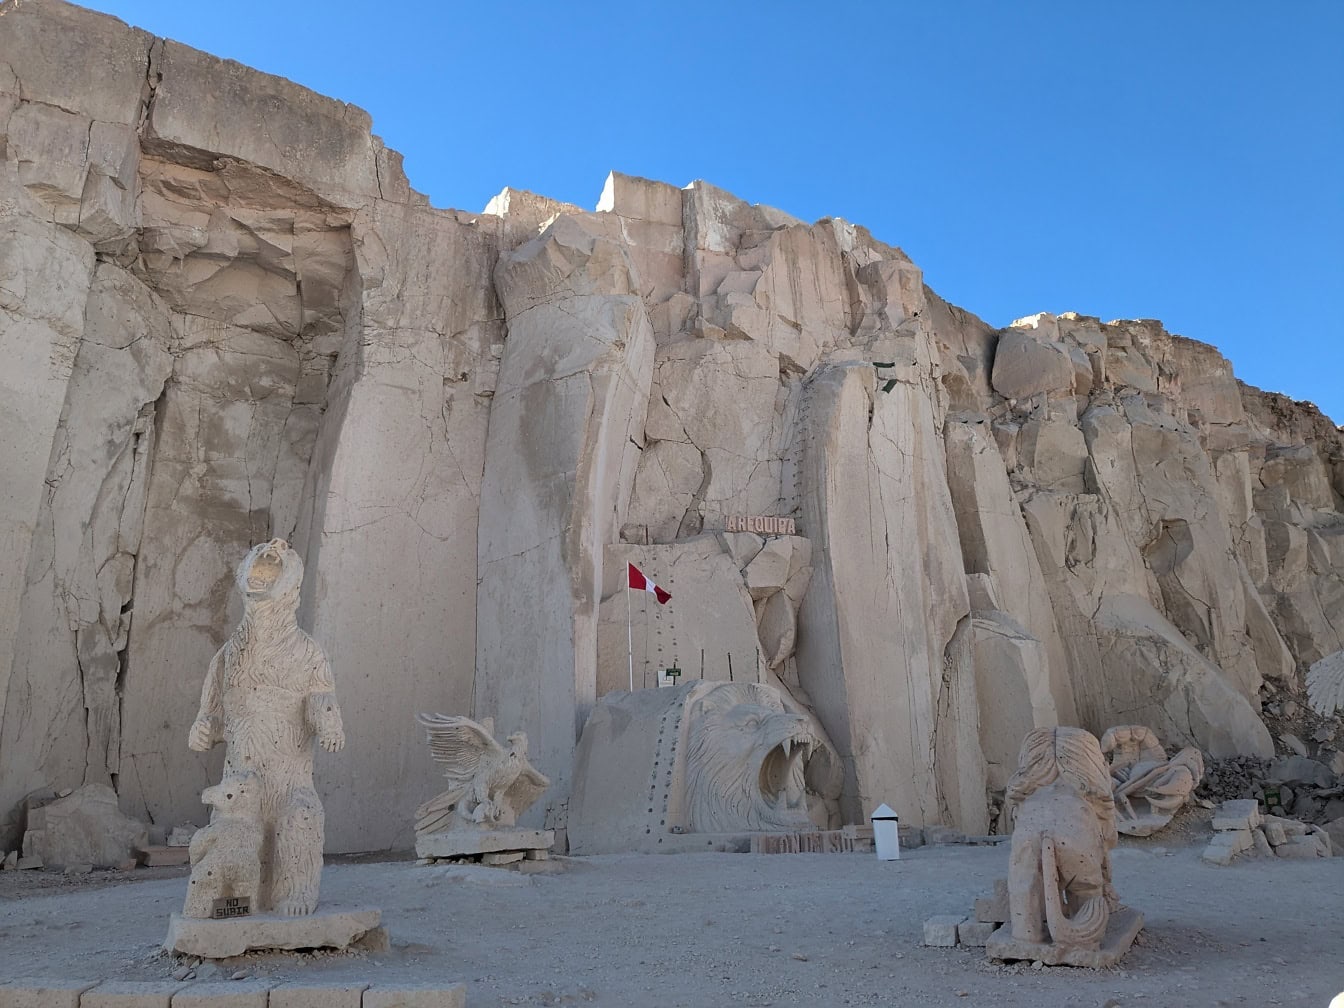 Esculturas de pedra na rota Sillar, perto do cânion Culebrillas, em Arequipa, uma famosa atração turística no Peru